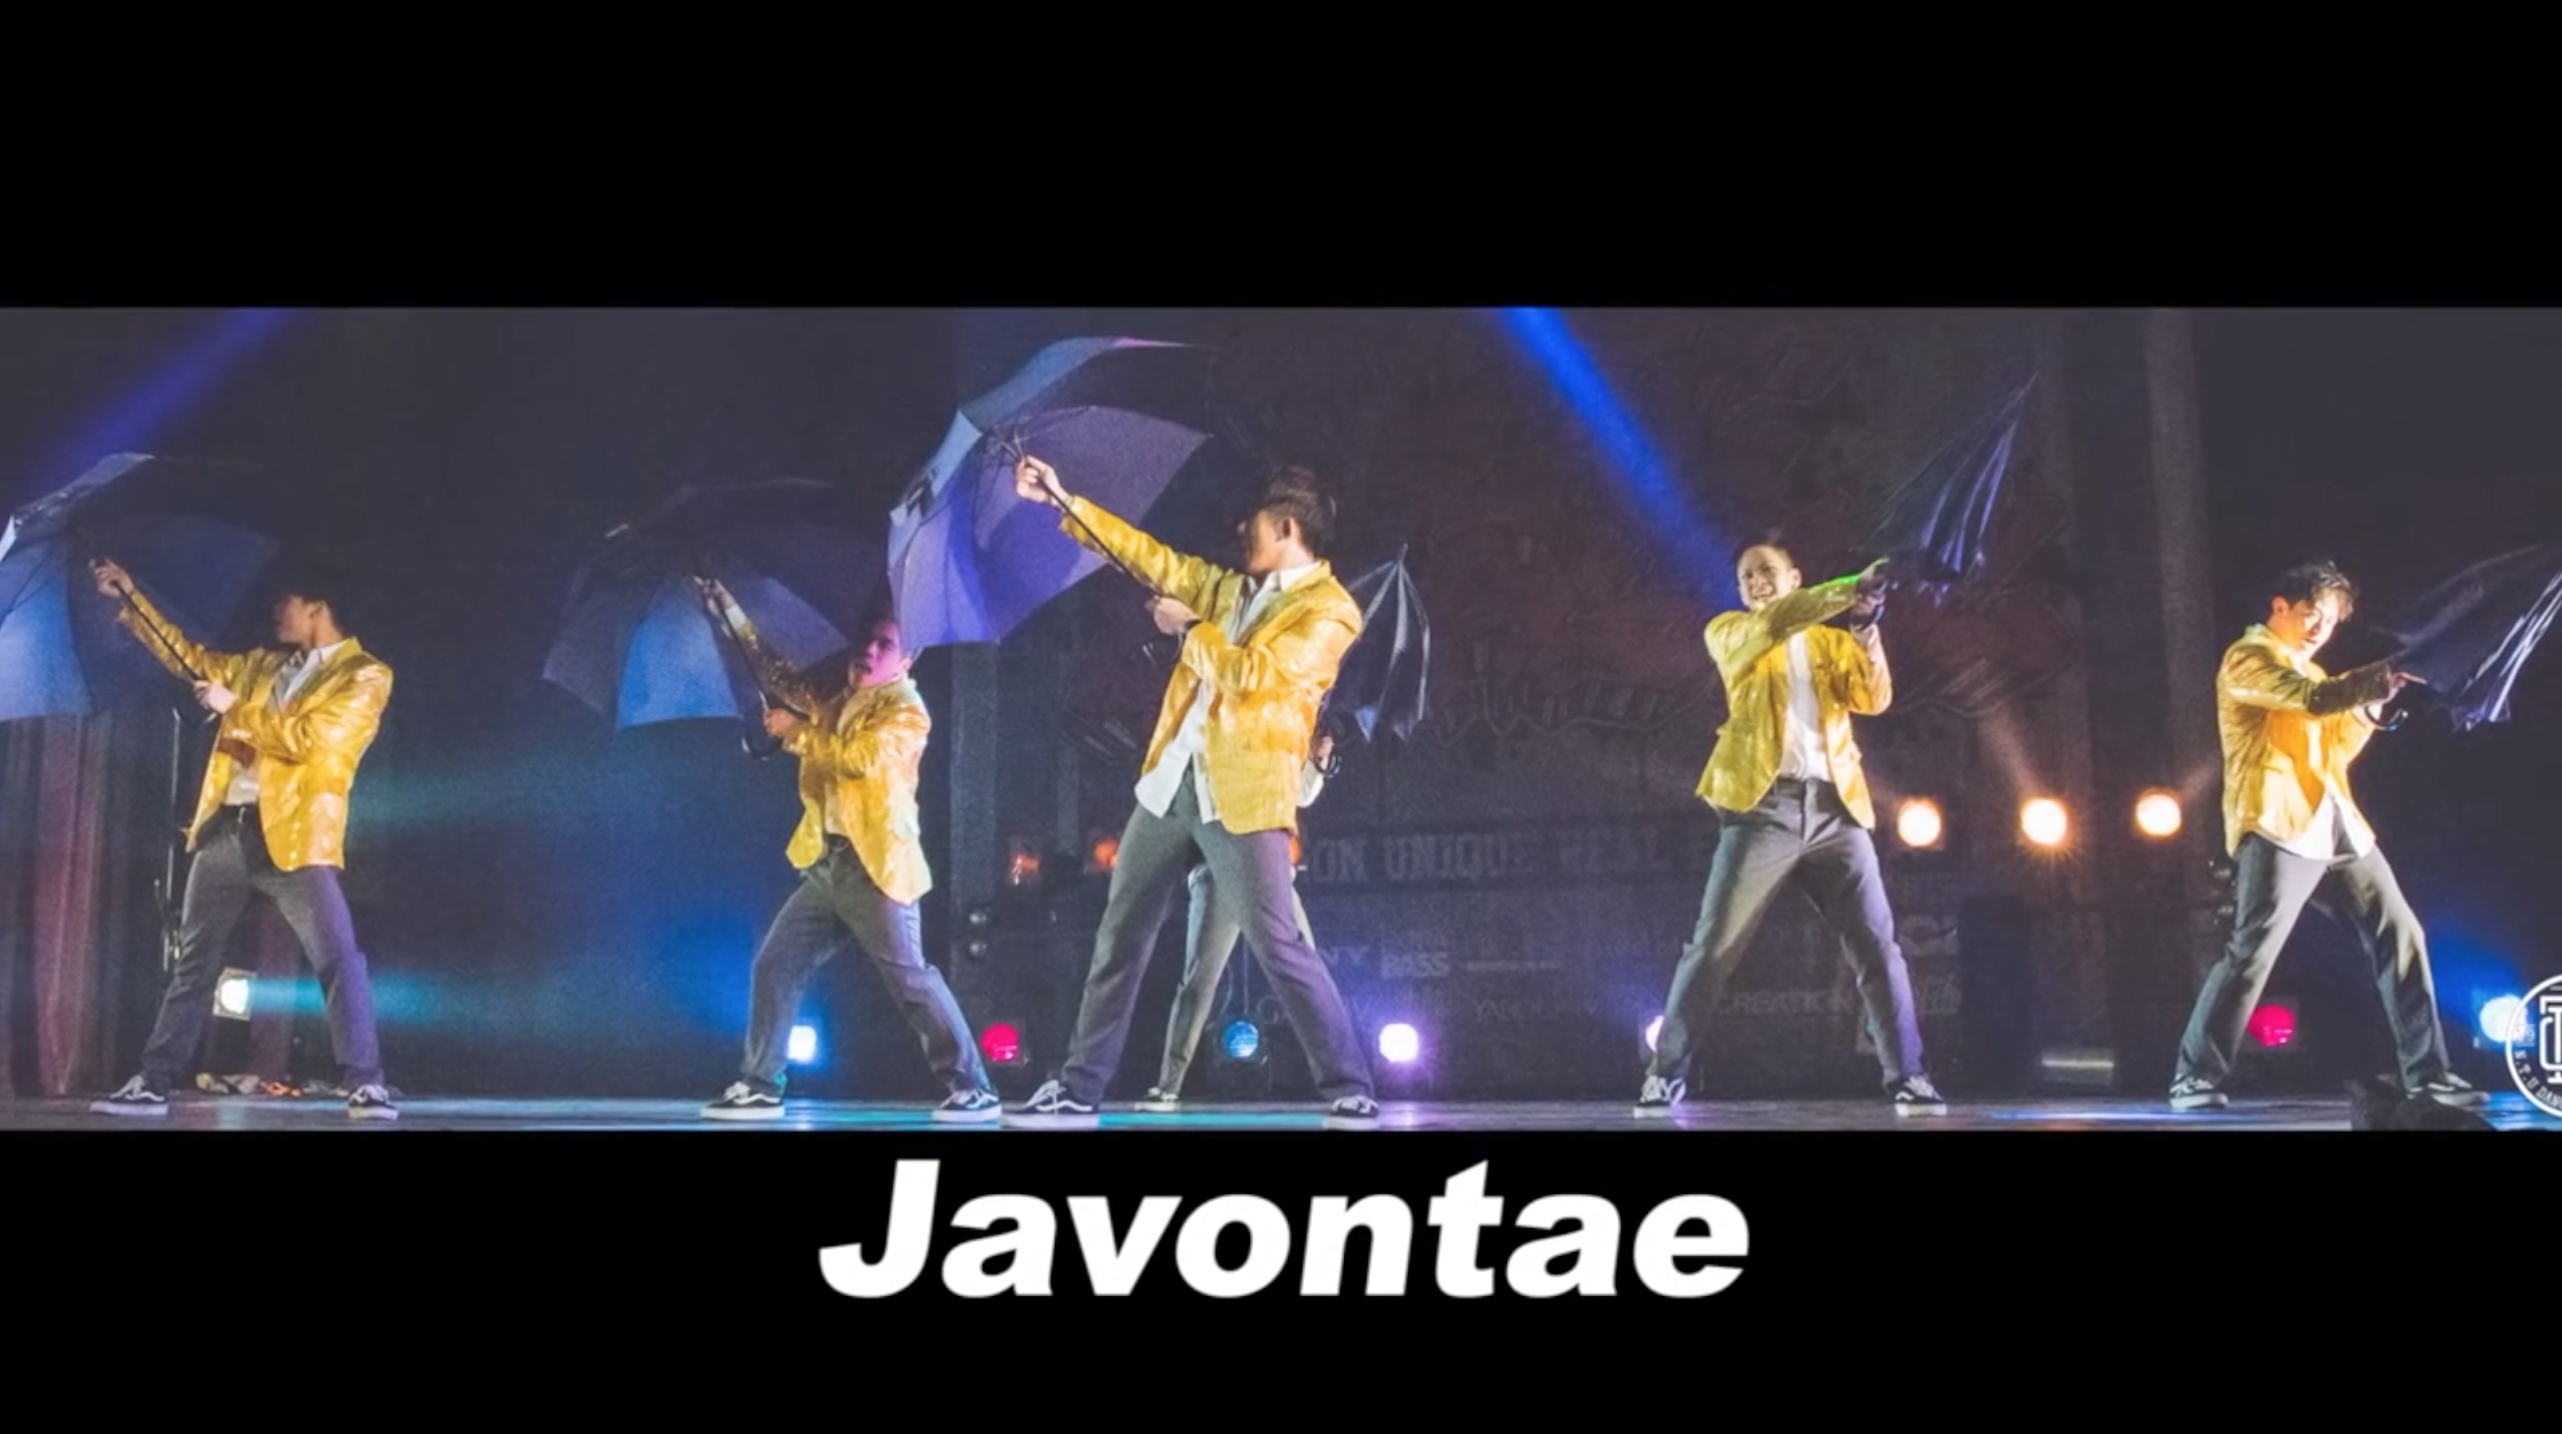 第24屆台大盃熱舞大賽 精選舞團 Javontae